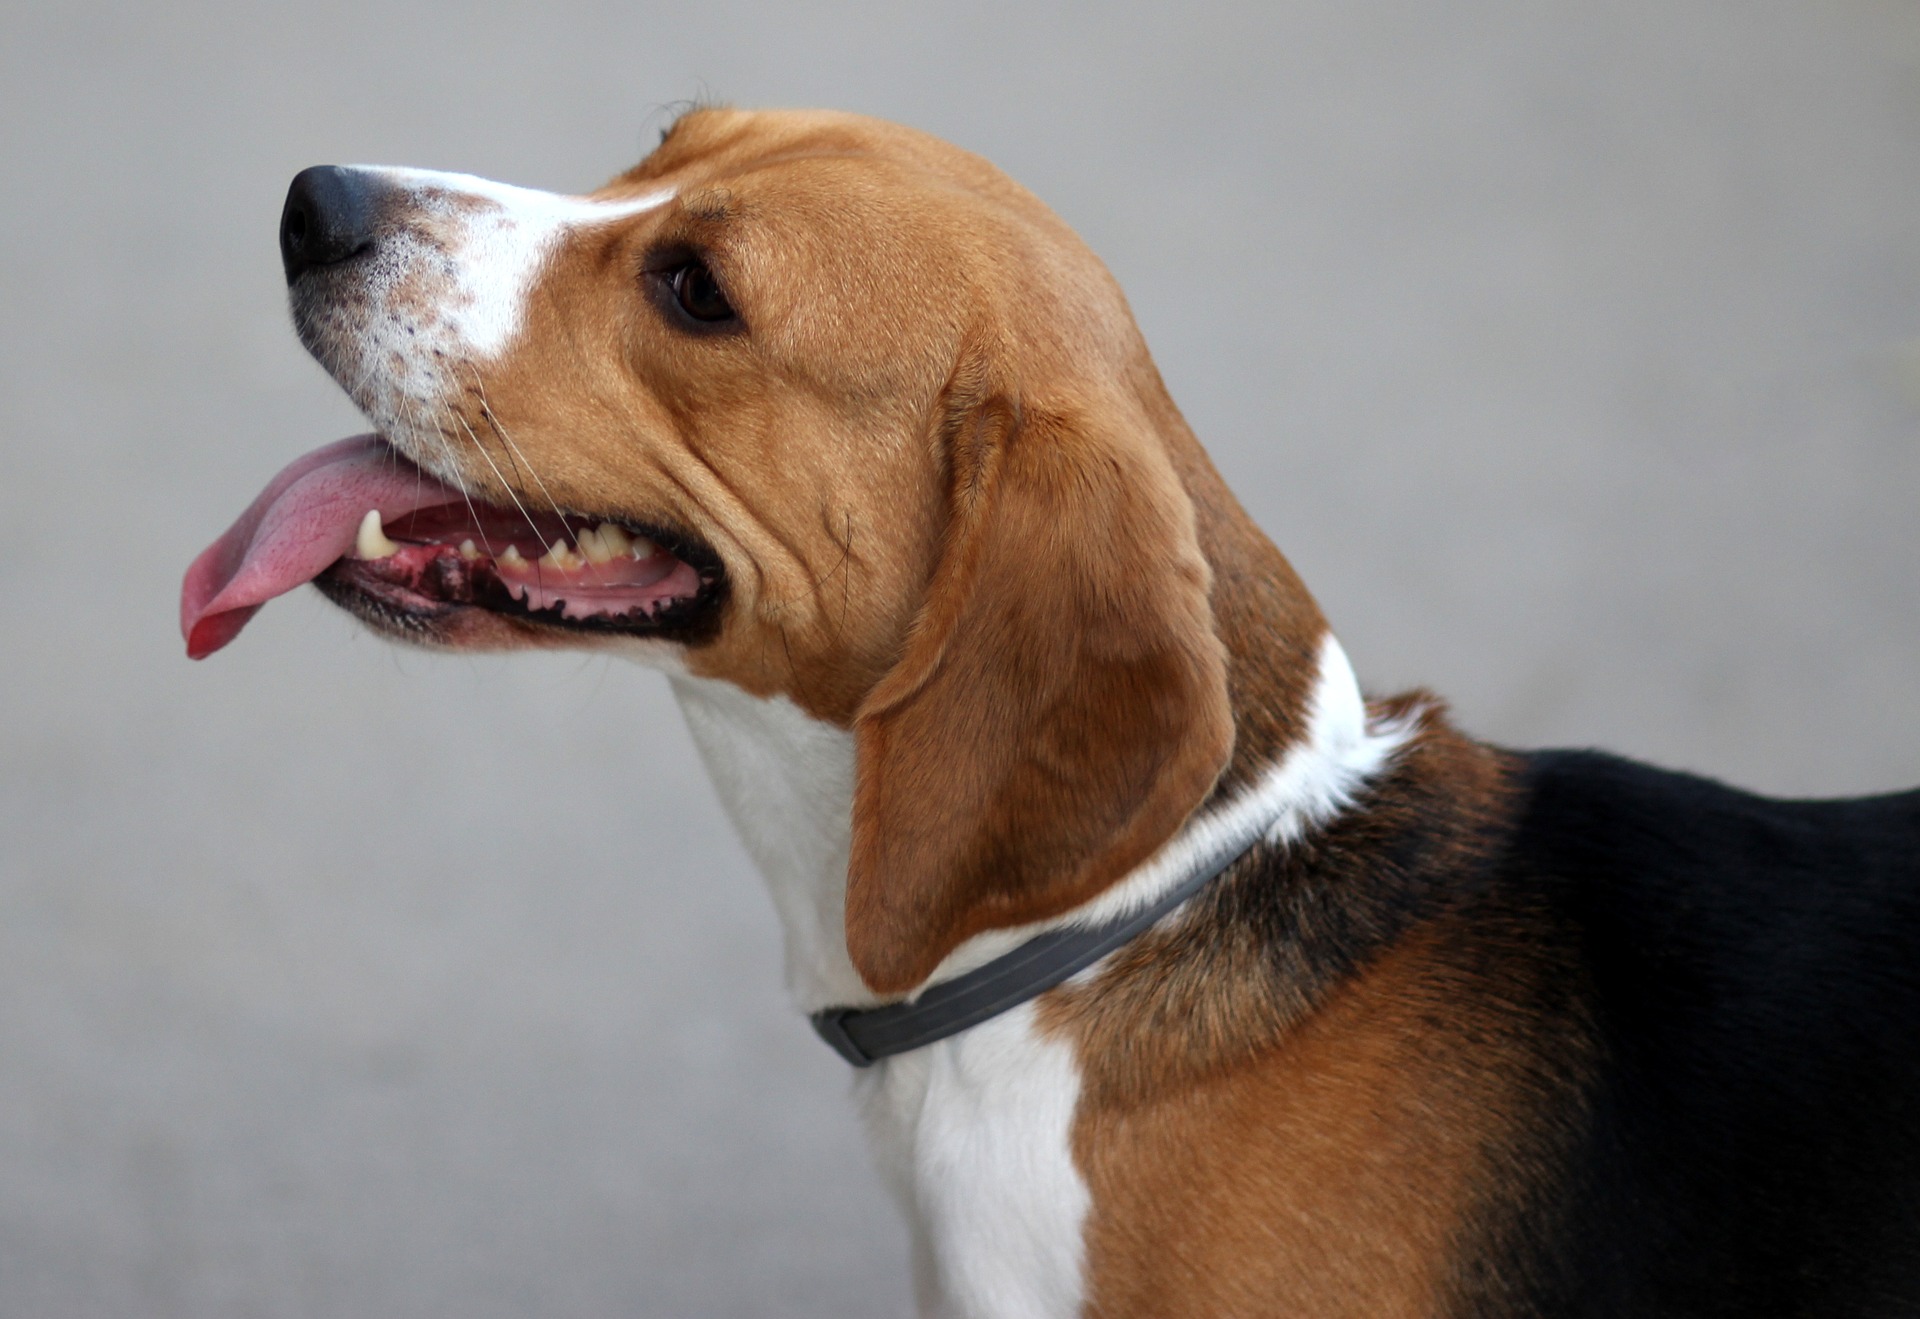 Très vif et enjoué, le beagle a tendance à s'enfuir s'il sent quelque chose d'intéressant. C'est une race qui demande beaucoup d'engagement de la part de la personne qui s'en occupe.